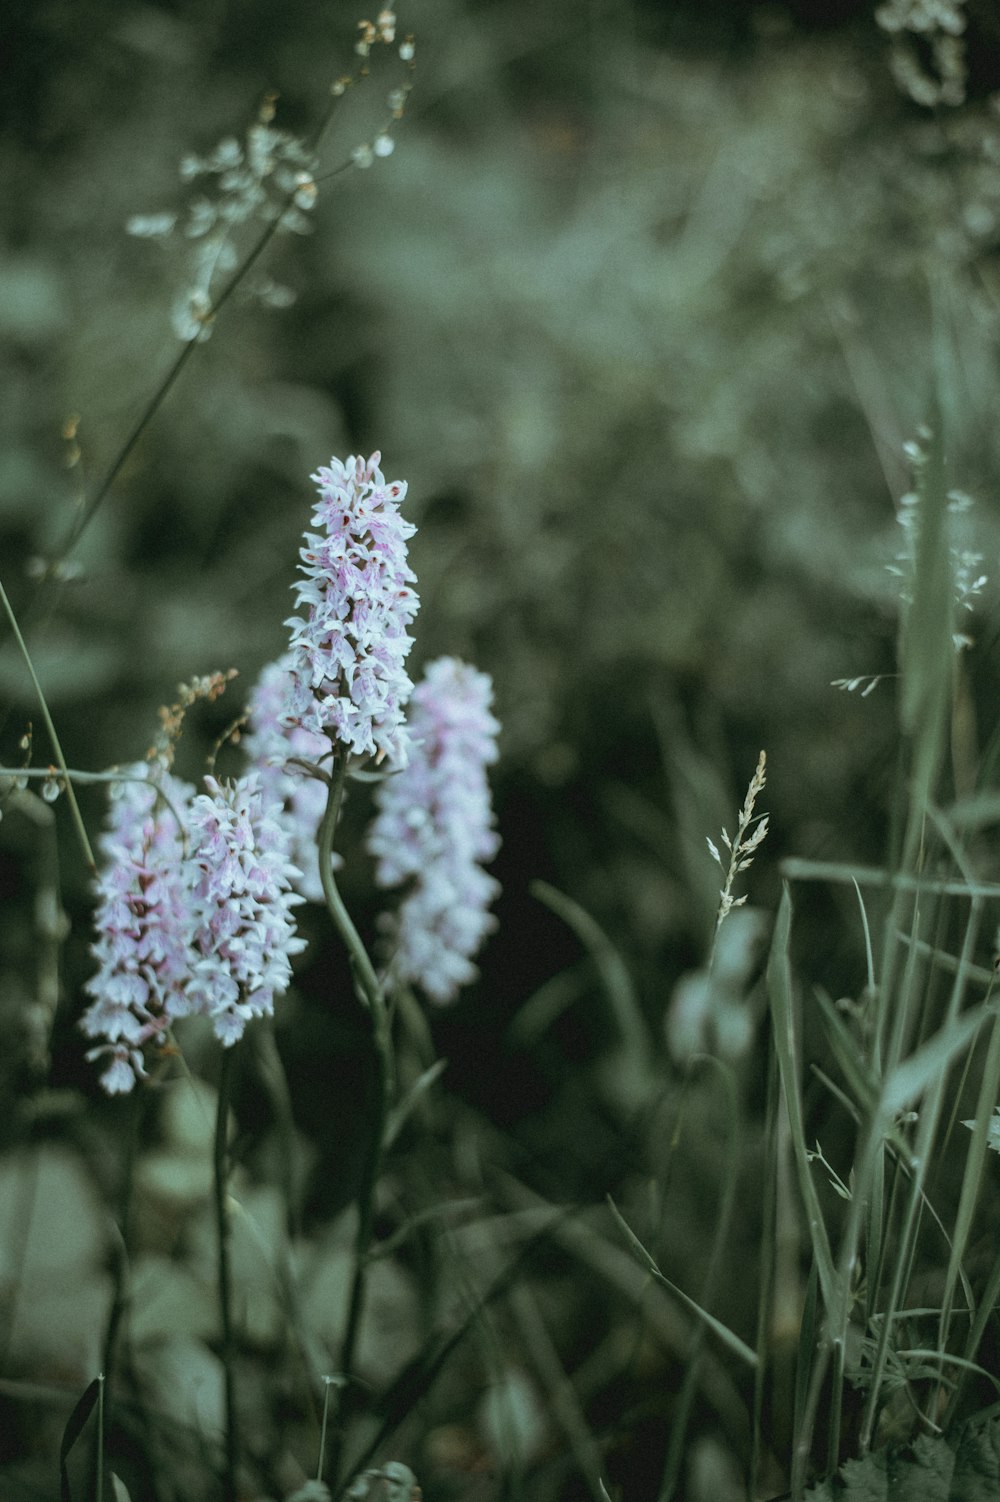 Photographie sélective de fleurs blanches en grappe